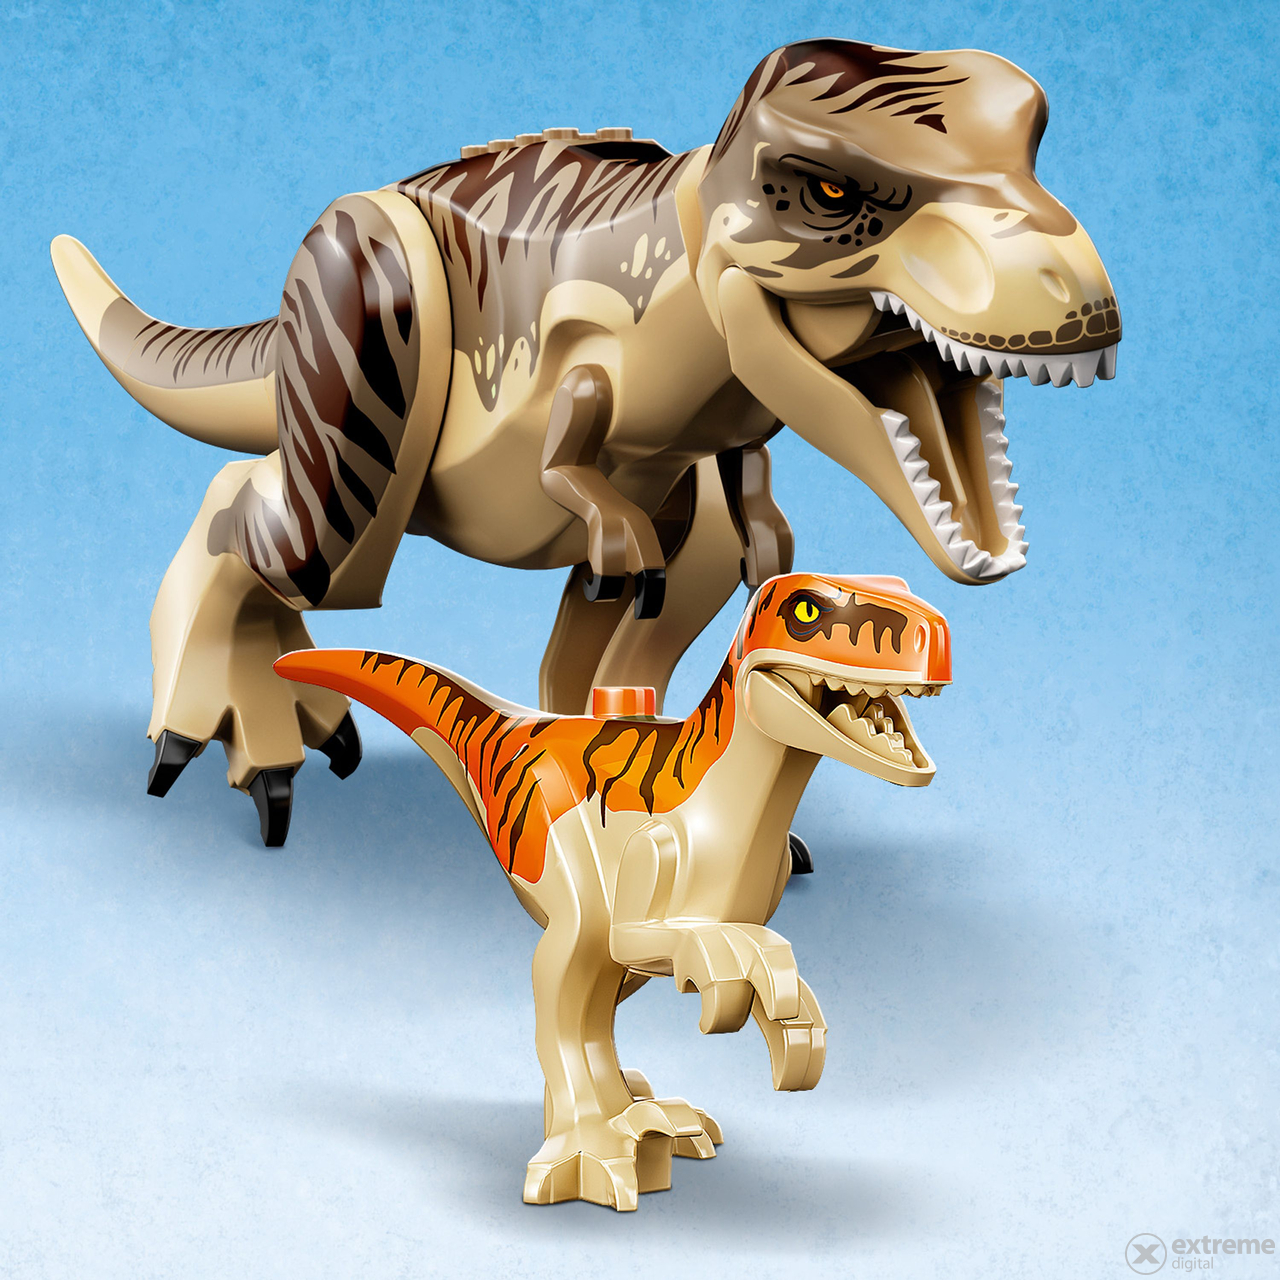 LEGO Jurassic World 76948 T-Rex & Atrociraptor: Dinosaurier-Ausbruch